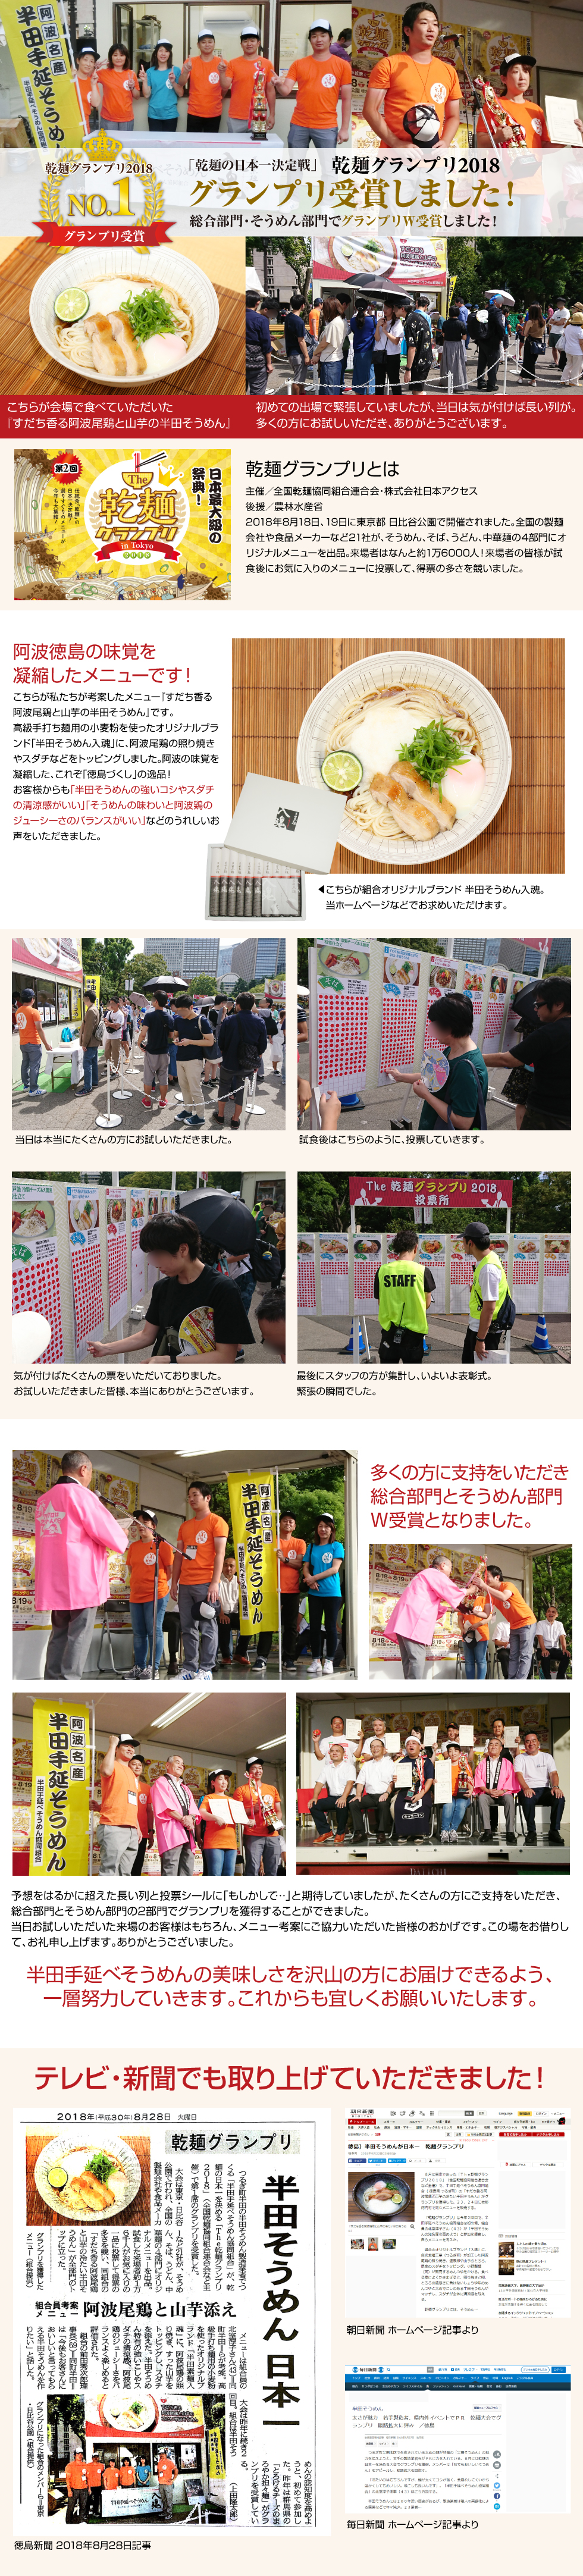 2018年8月18日、19日に東京都 日比谷公園で開催された乾麺グランプリ2018で、当組合のメニュー『すだち香る阿波尾鶏と山芋の半田そうめん』が総合部門・そうめん部門でグランプリをW受賞しました。